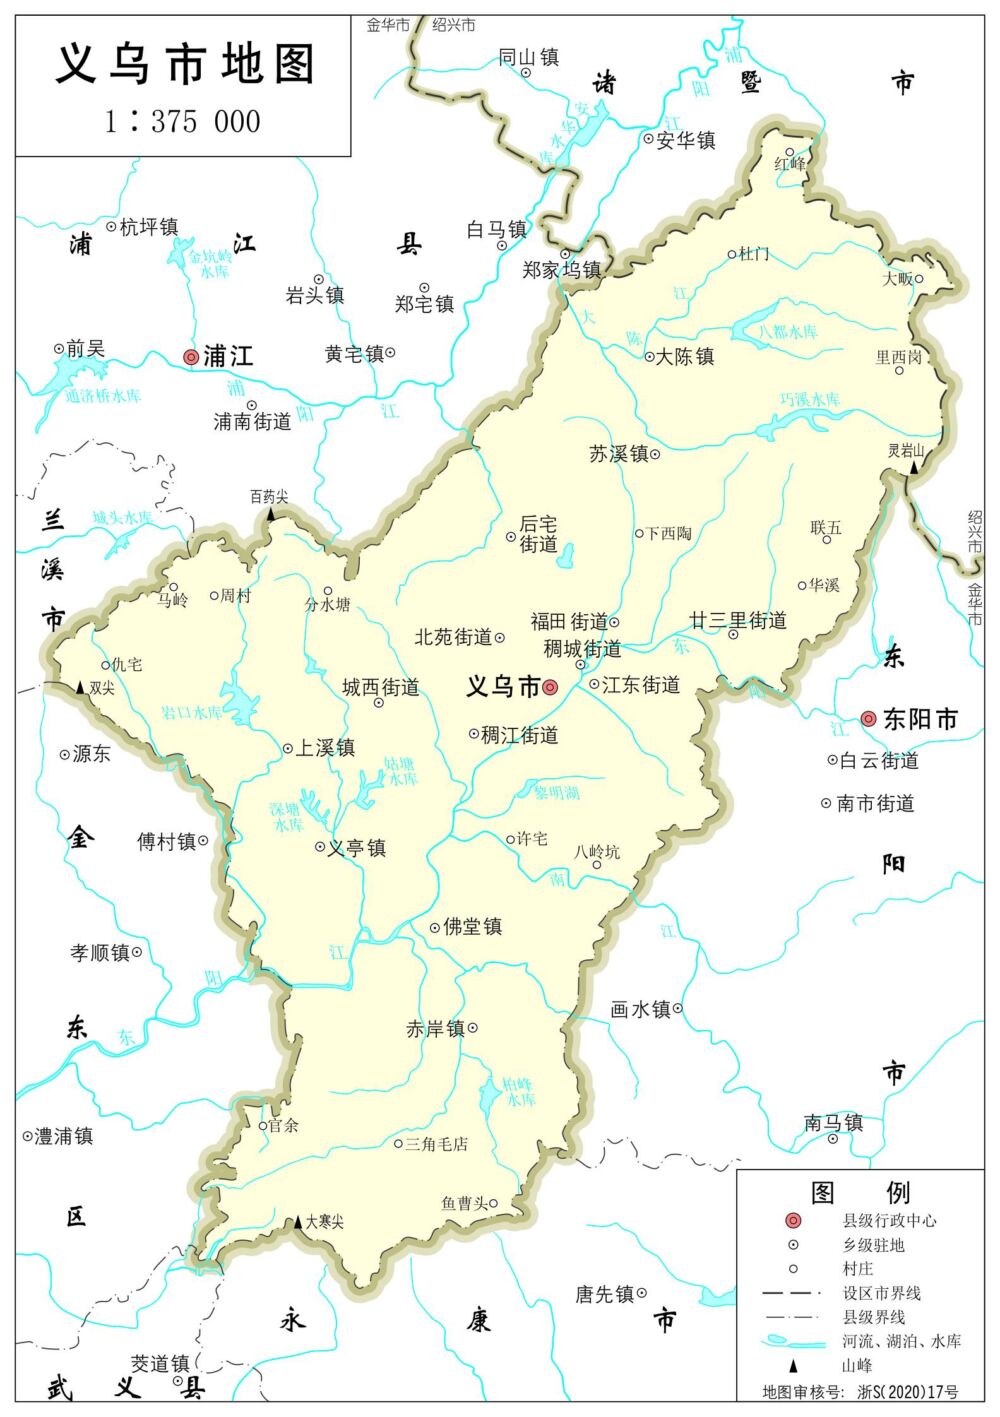 义乌市历史及行政区划沿革